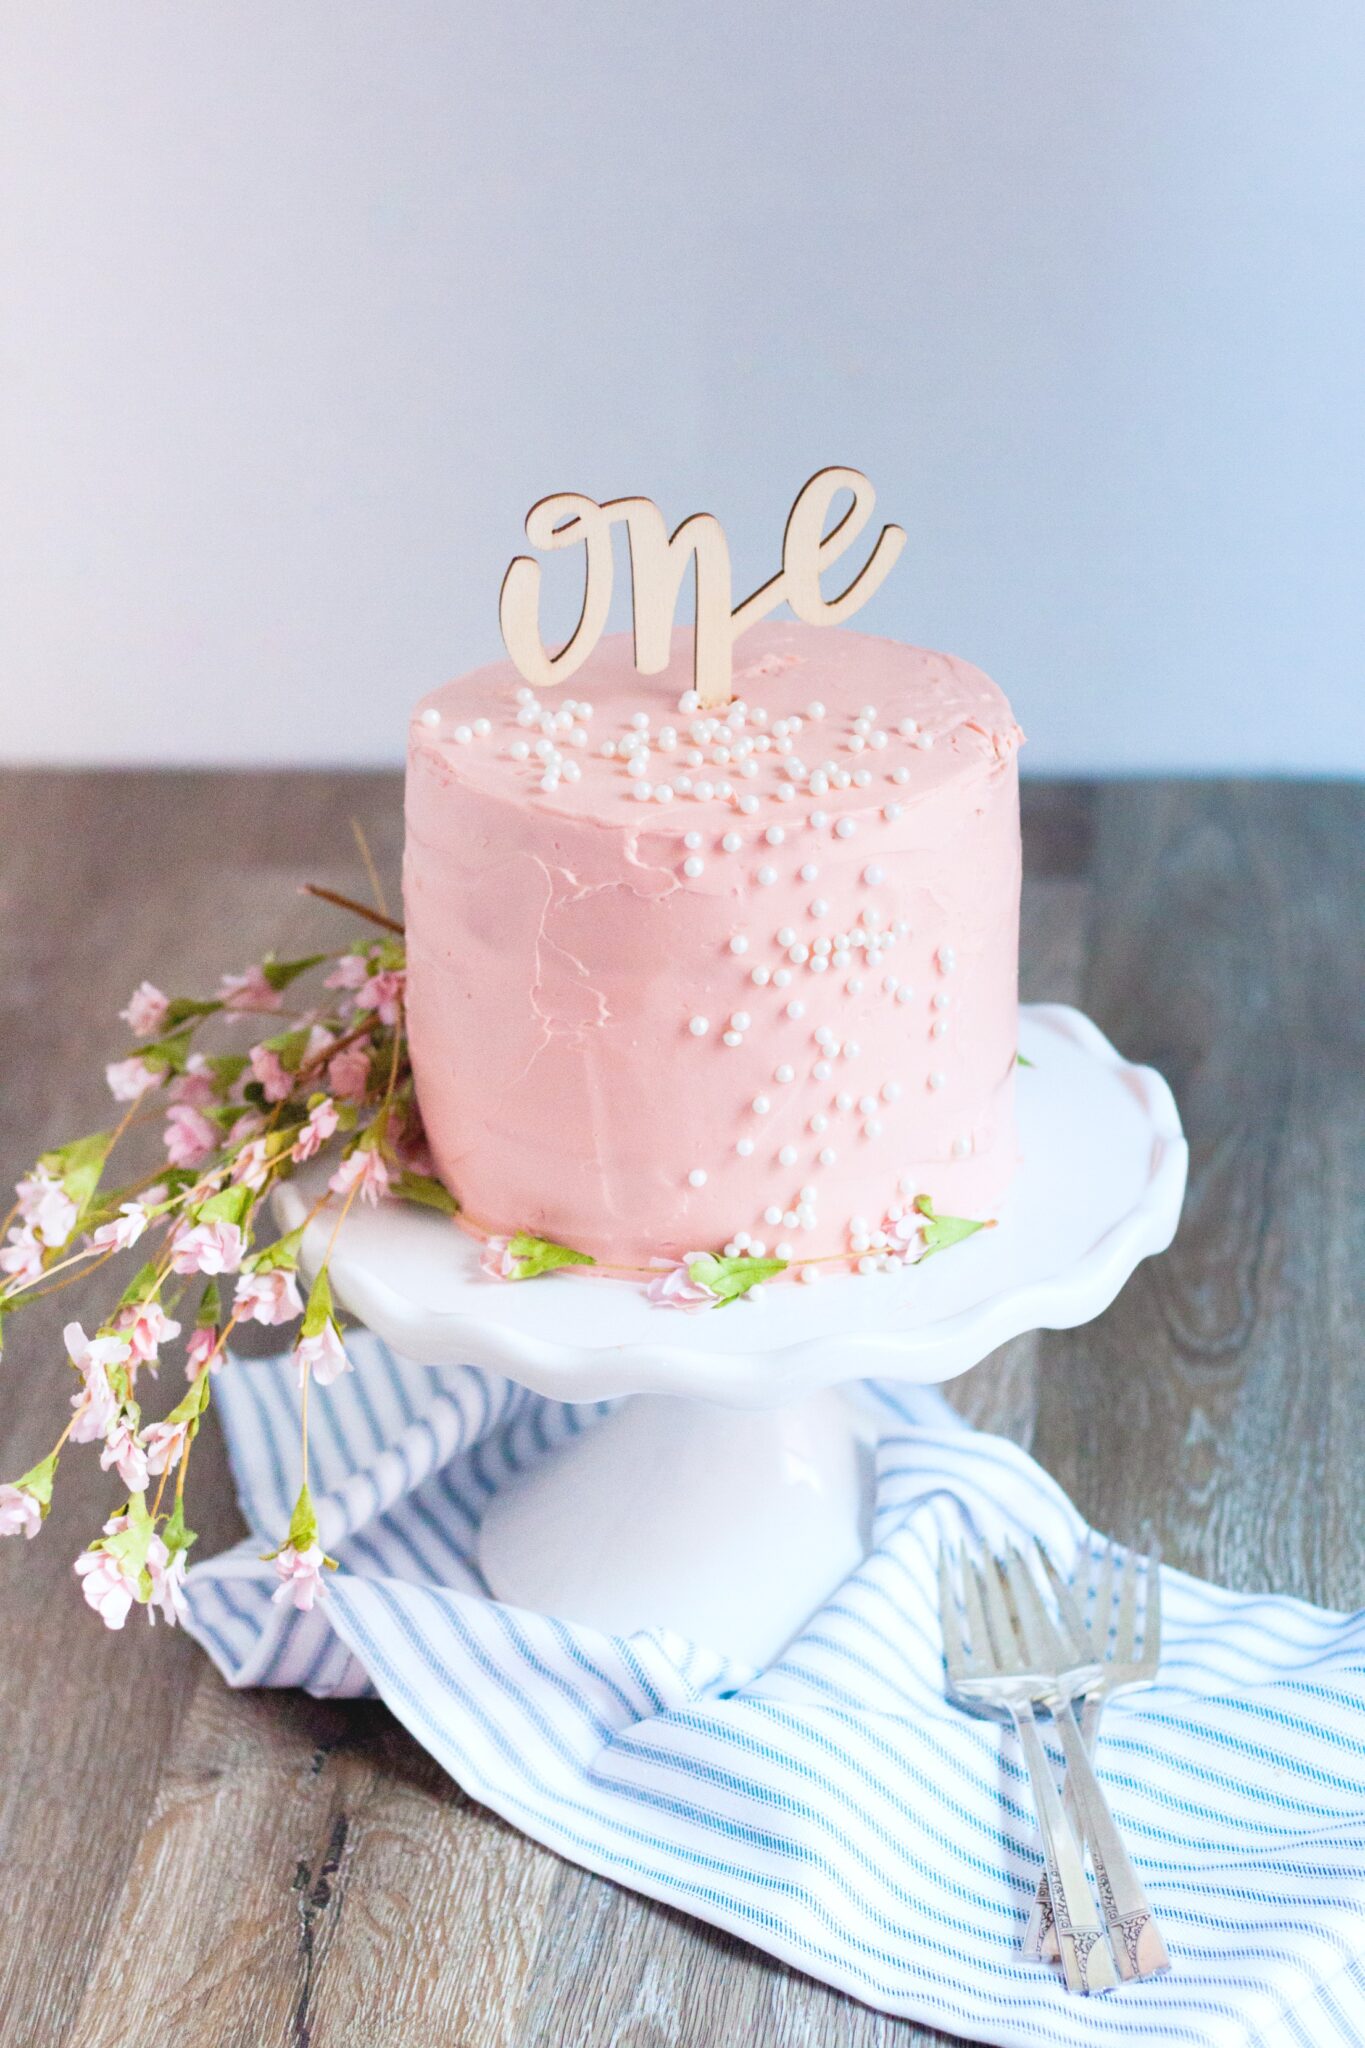 Baby’s First Organic Birthday Cake Recipe